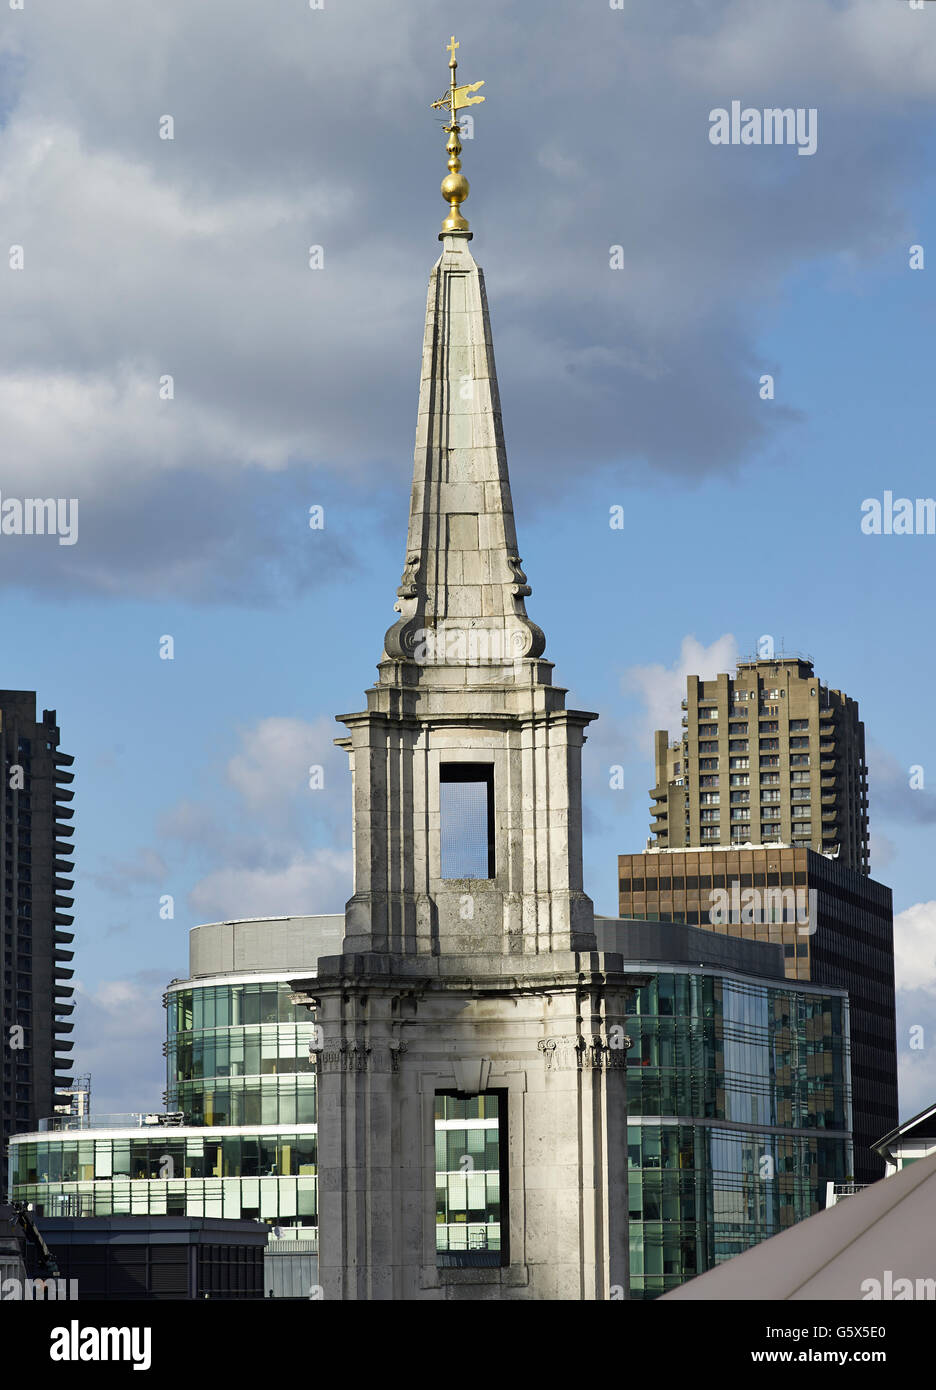 St. Vedast Alias Foster, Kirche in der City of London; Barocke Turmspitze, gonna aus konkav konvex und zurück zu konkav. Stockfoto